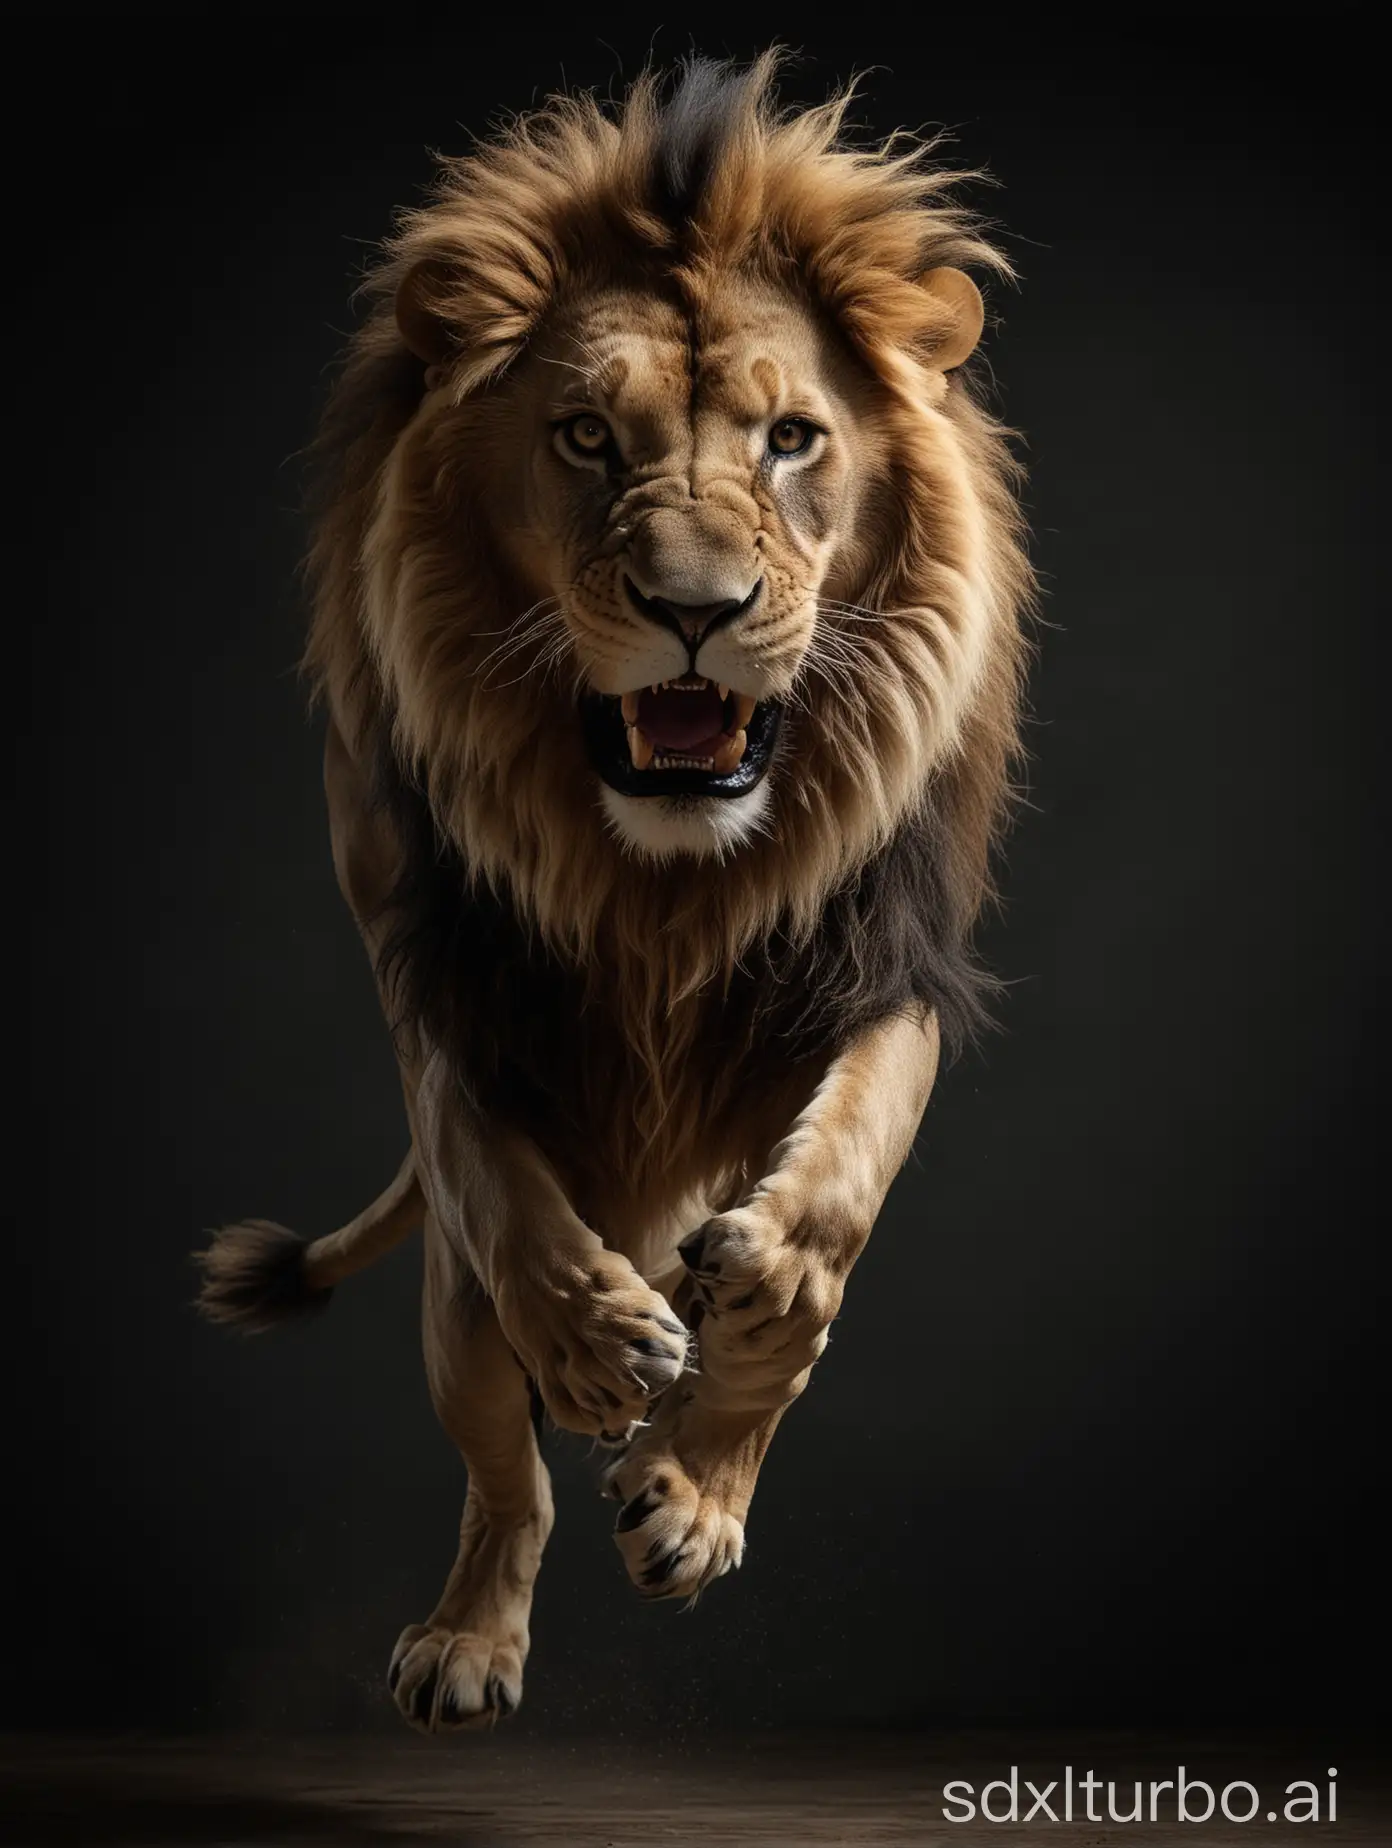 großer majestätischer Löwe springt laut brüllend direkt auf die Kamera zu, in einem Fotostudio mit dunklen Hintergrund, sehr detailreich, ultrahochauflösend